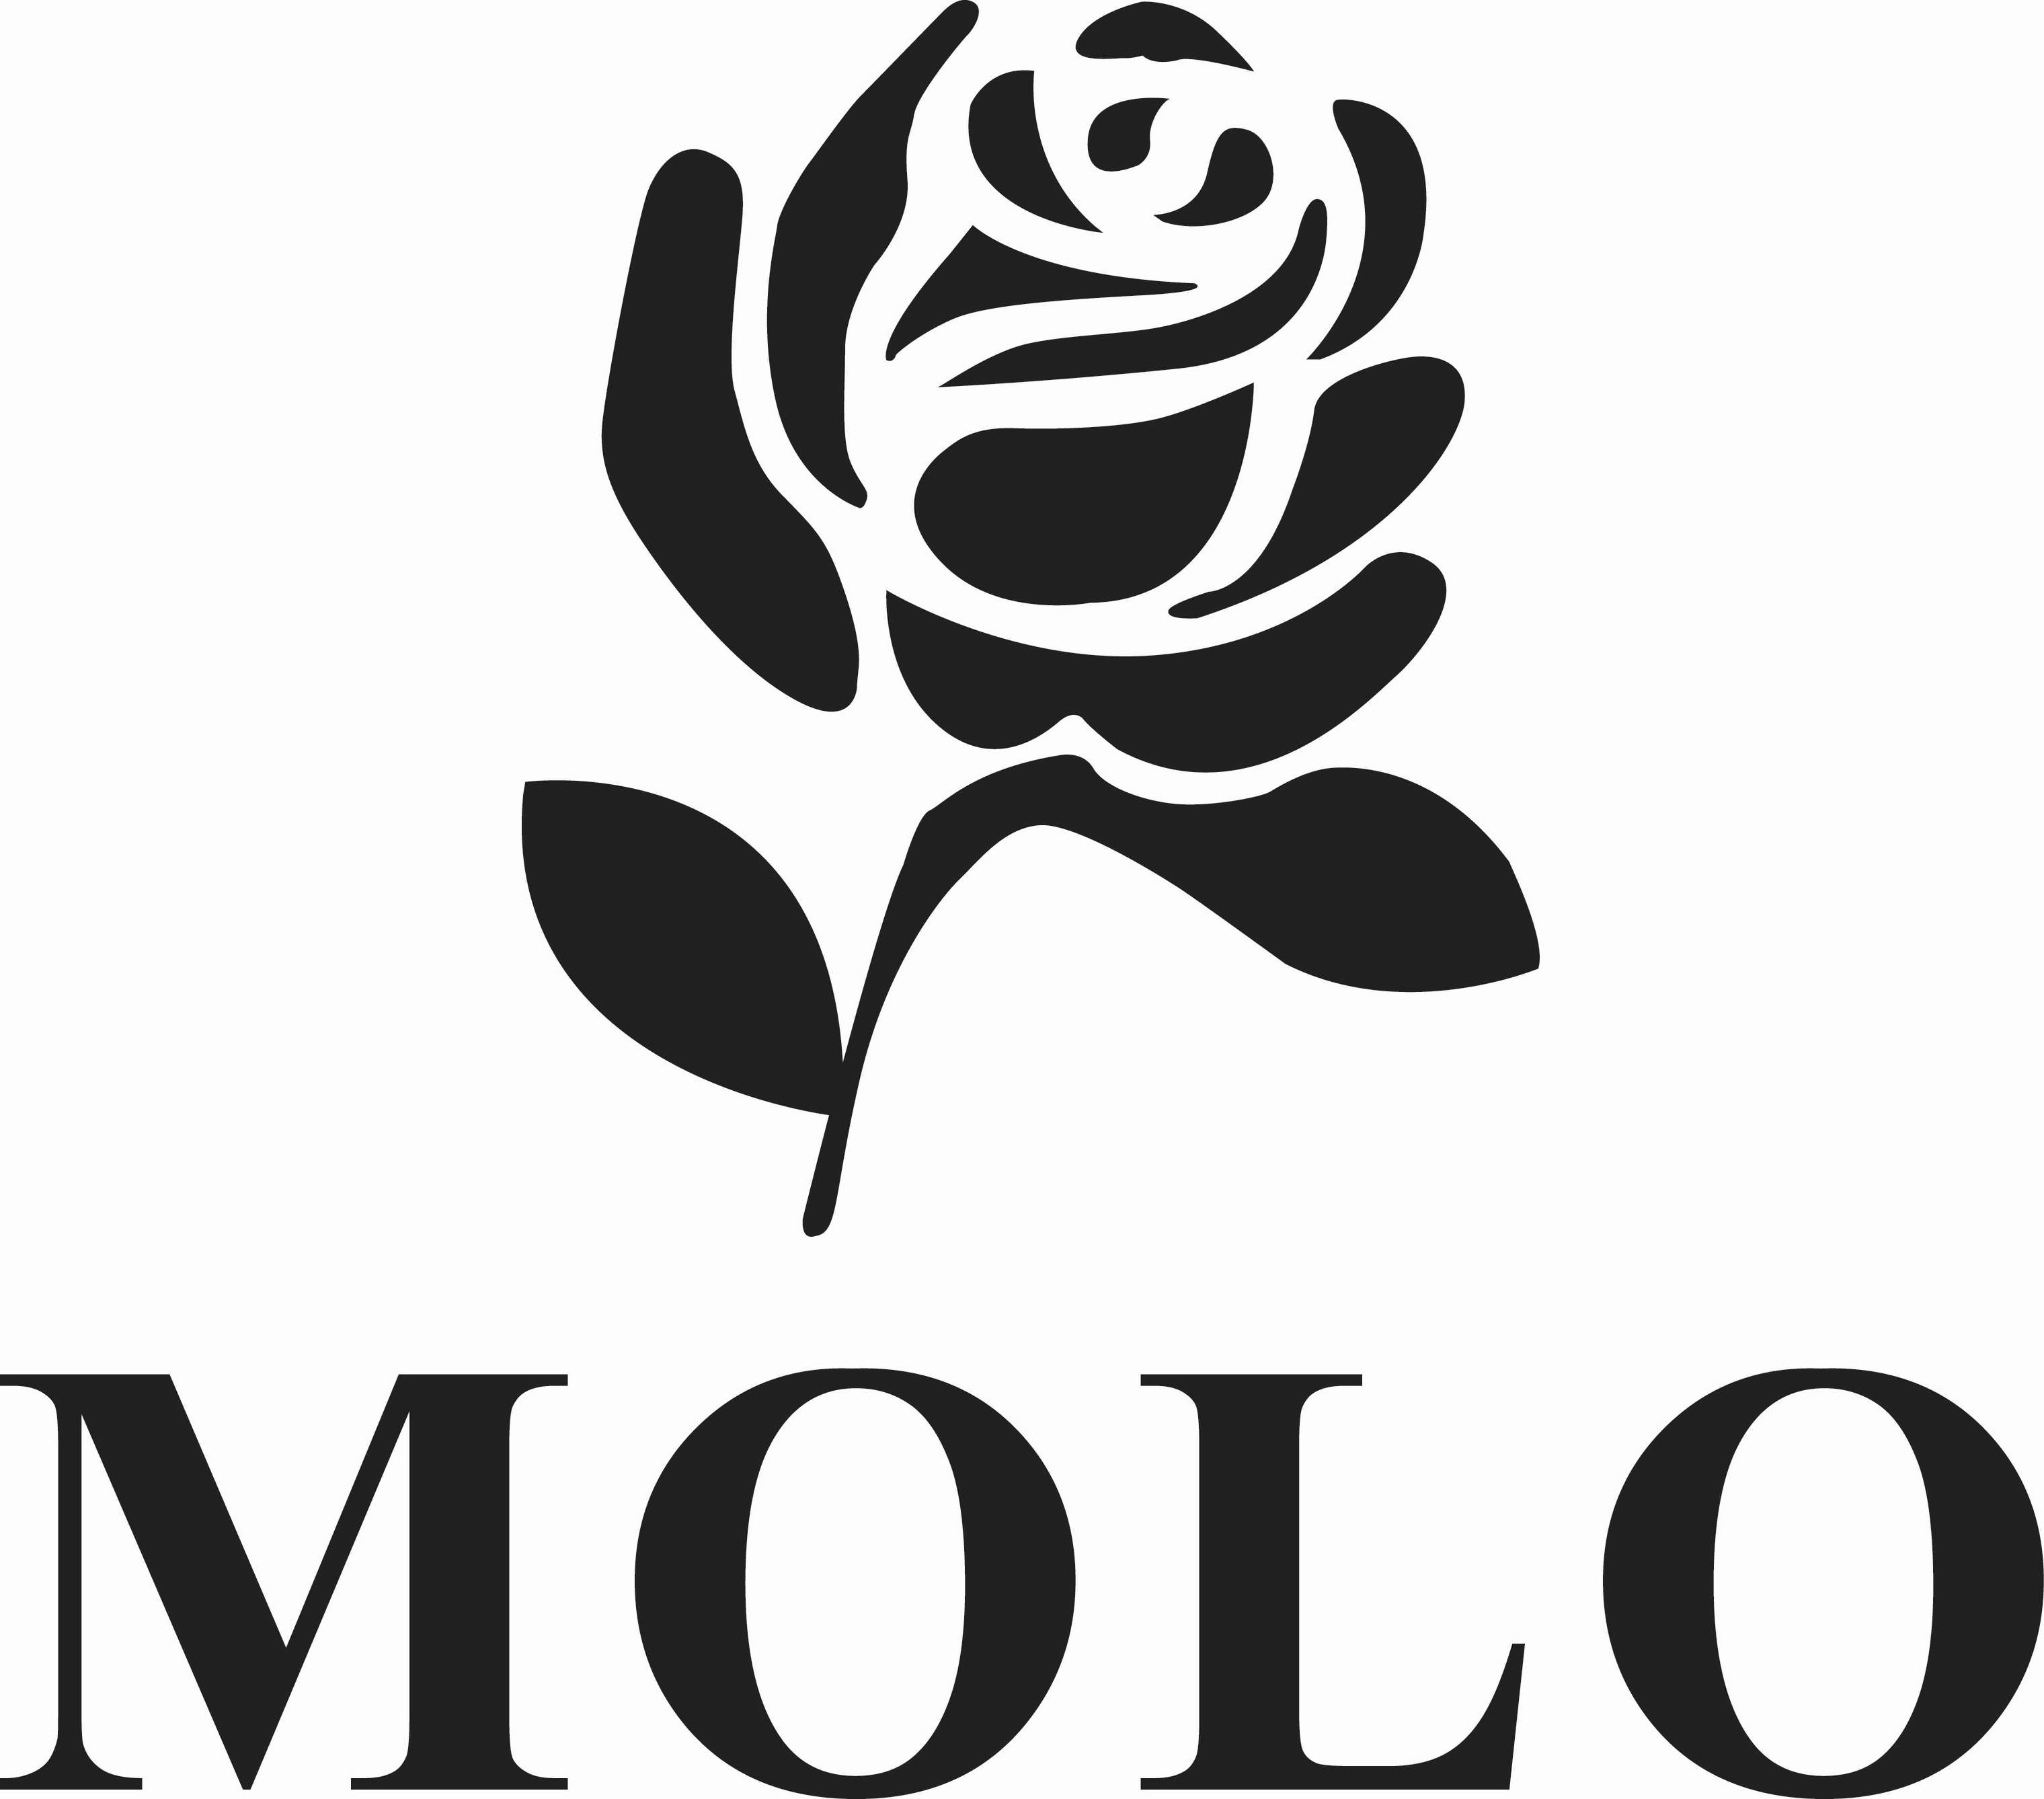 MOLO